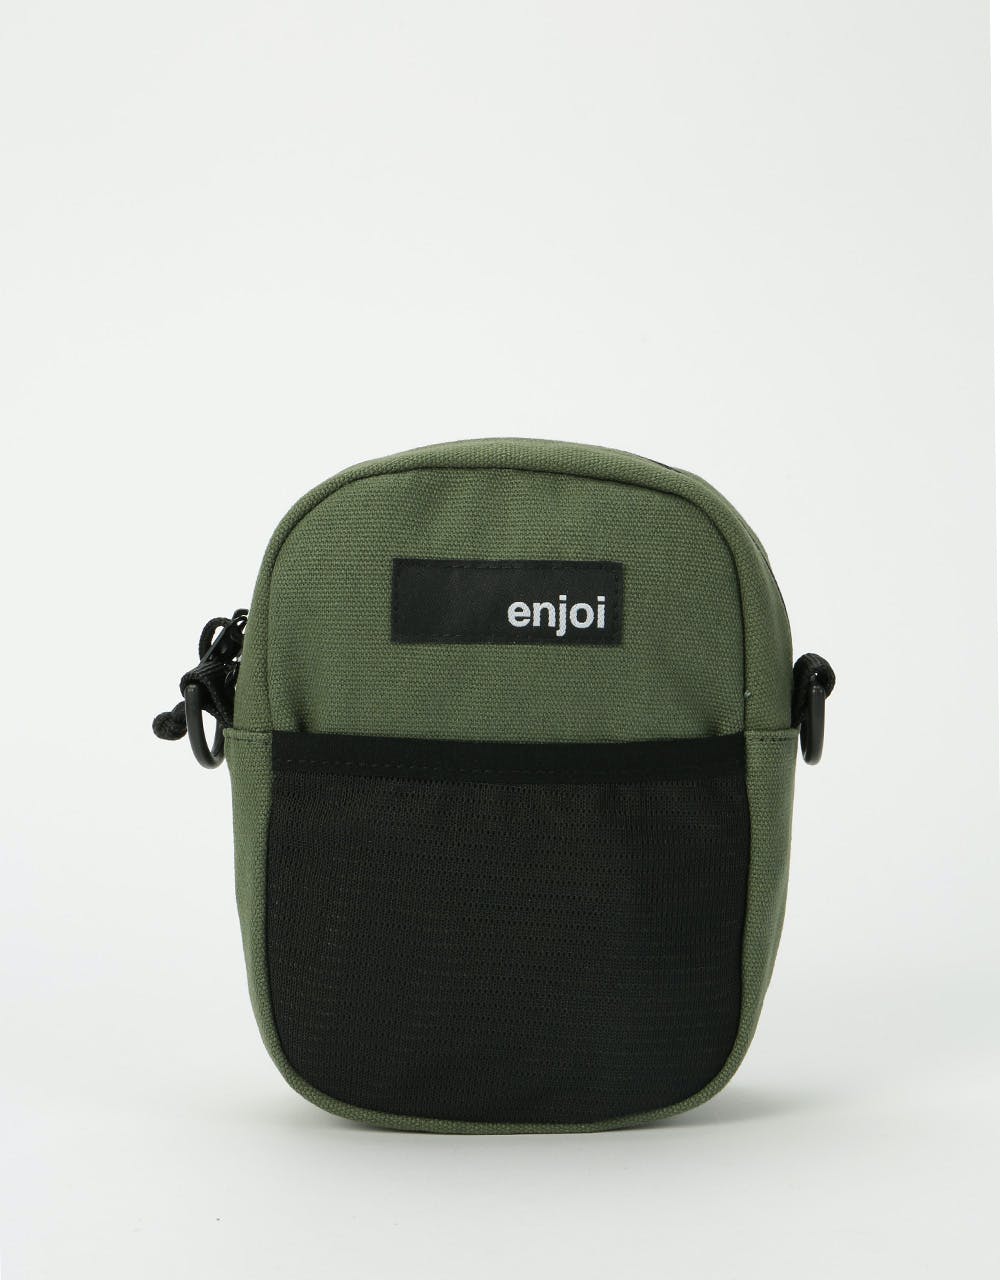 Enjoi Ratpack Cross Body Bag - Army